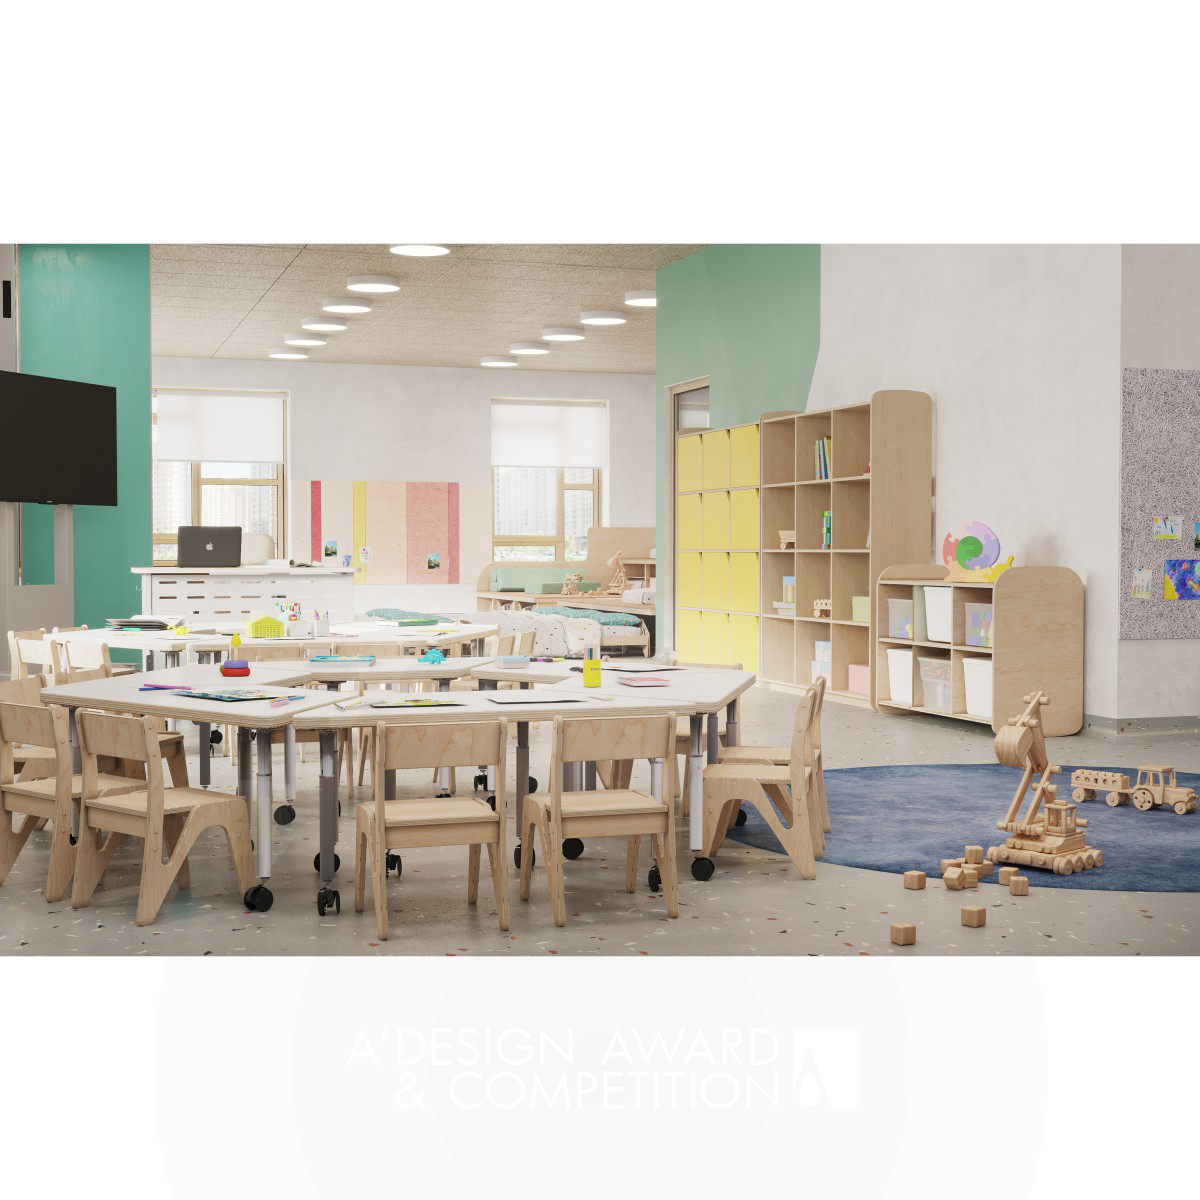 Kaleidoscope: Kindergarten Design Project